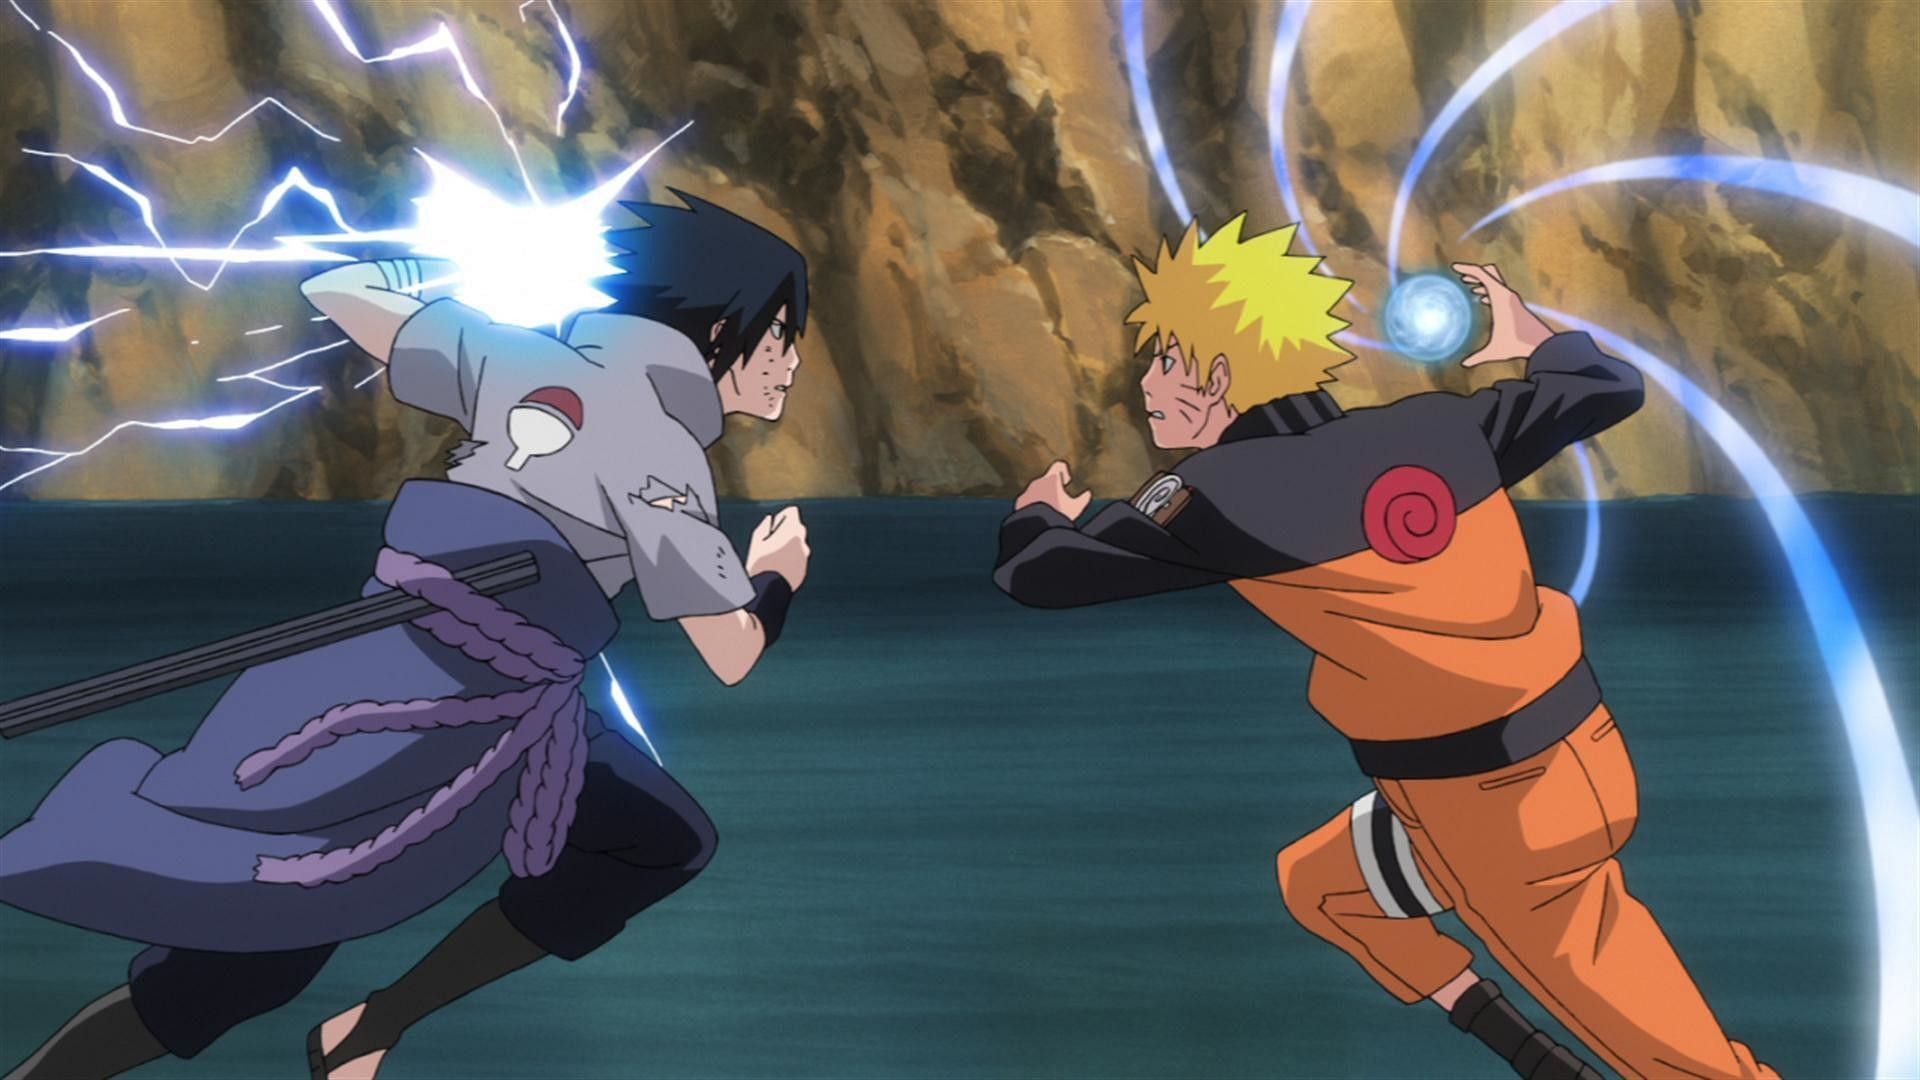 Naruto and Sasuke clashing during the Naruto series (Image via Studio Pierrot)